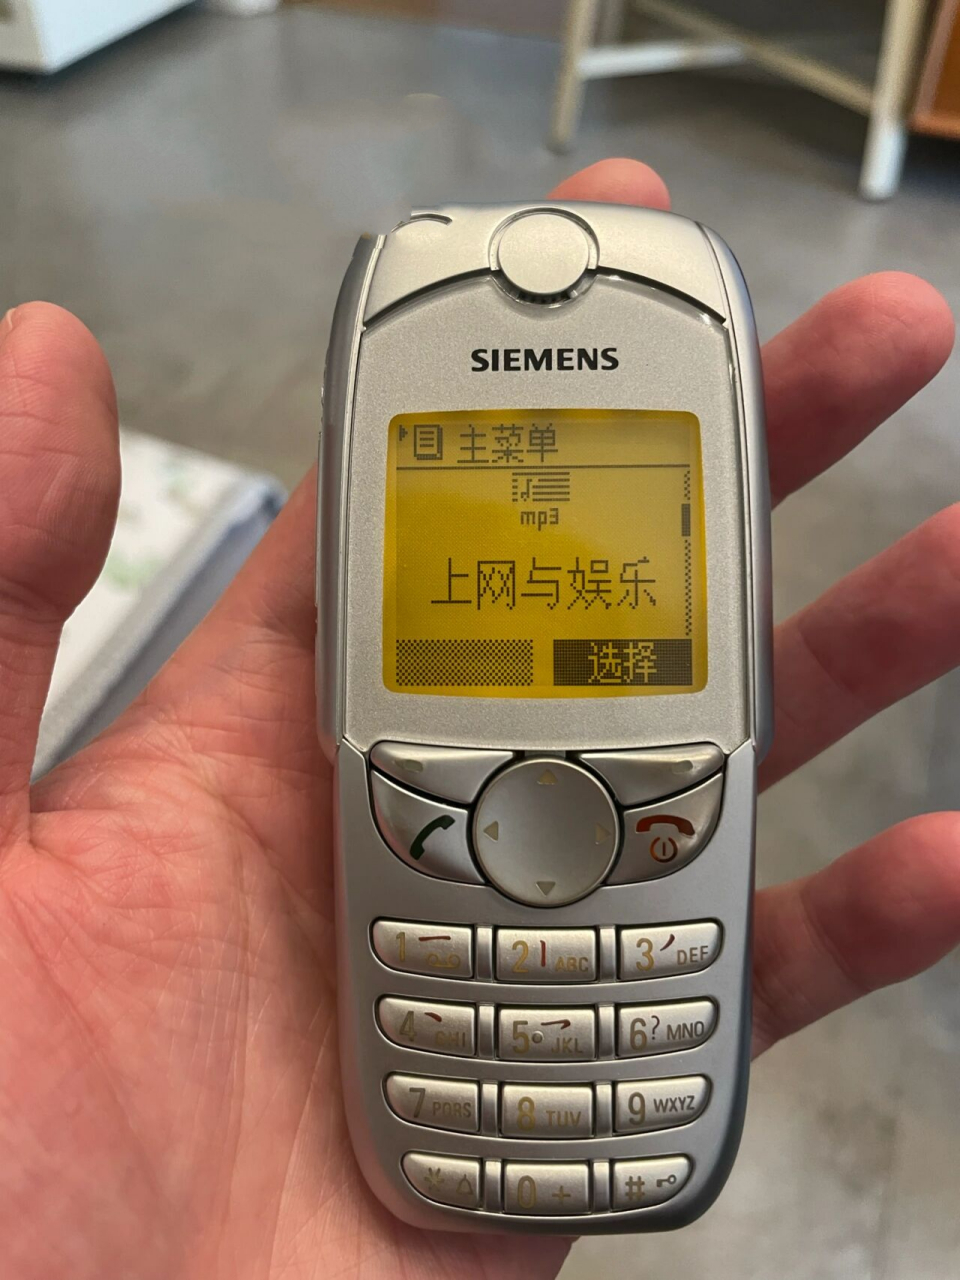 西门子6688,siemens经典怀旧手机 西门子6688在2000年是绝对顶流的